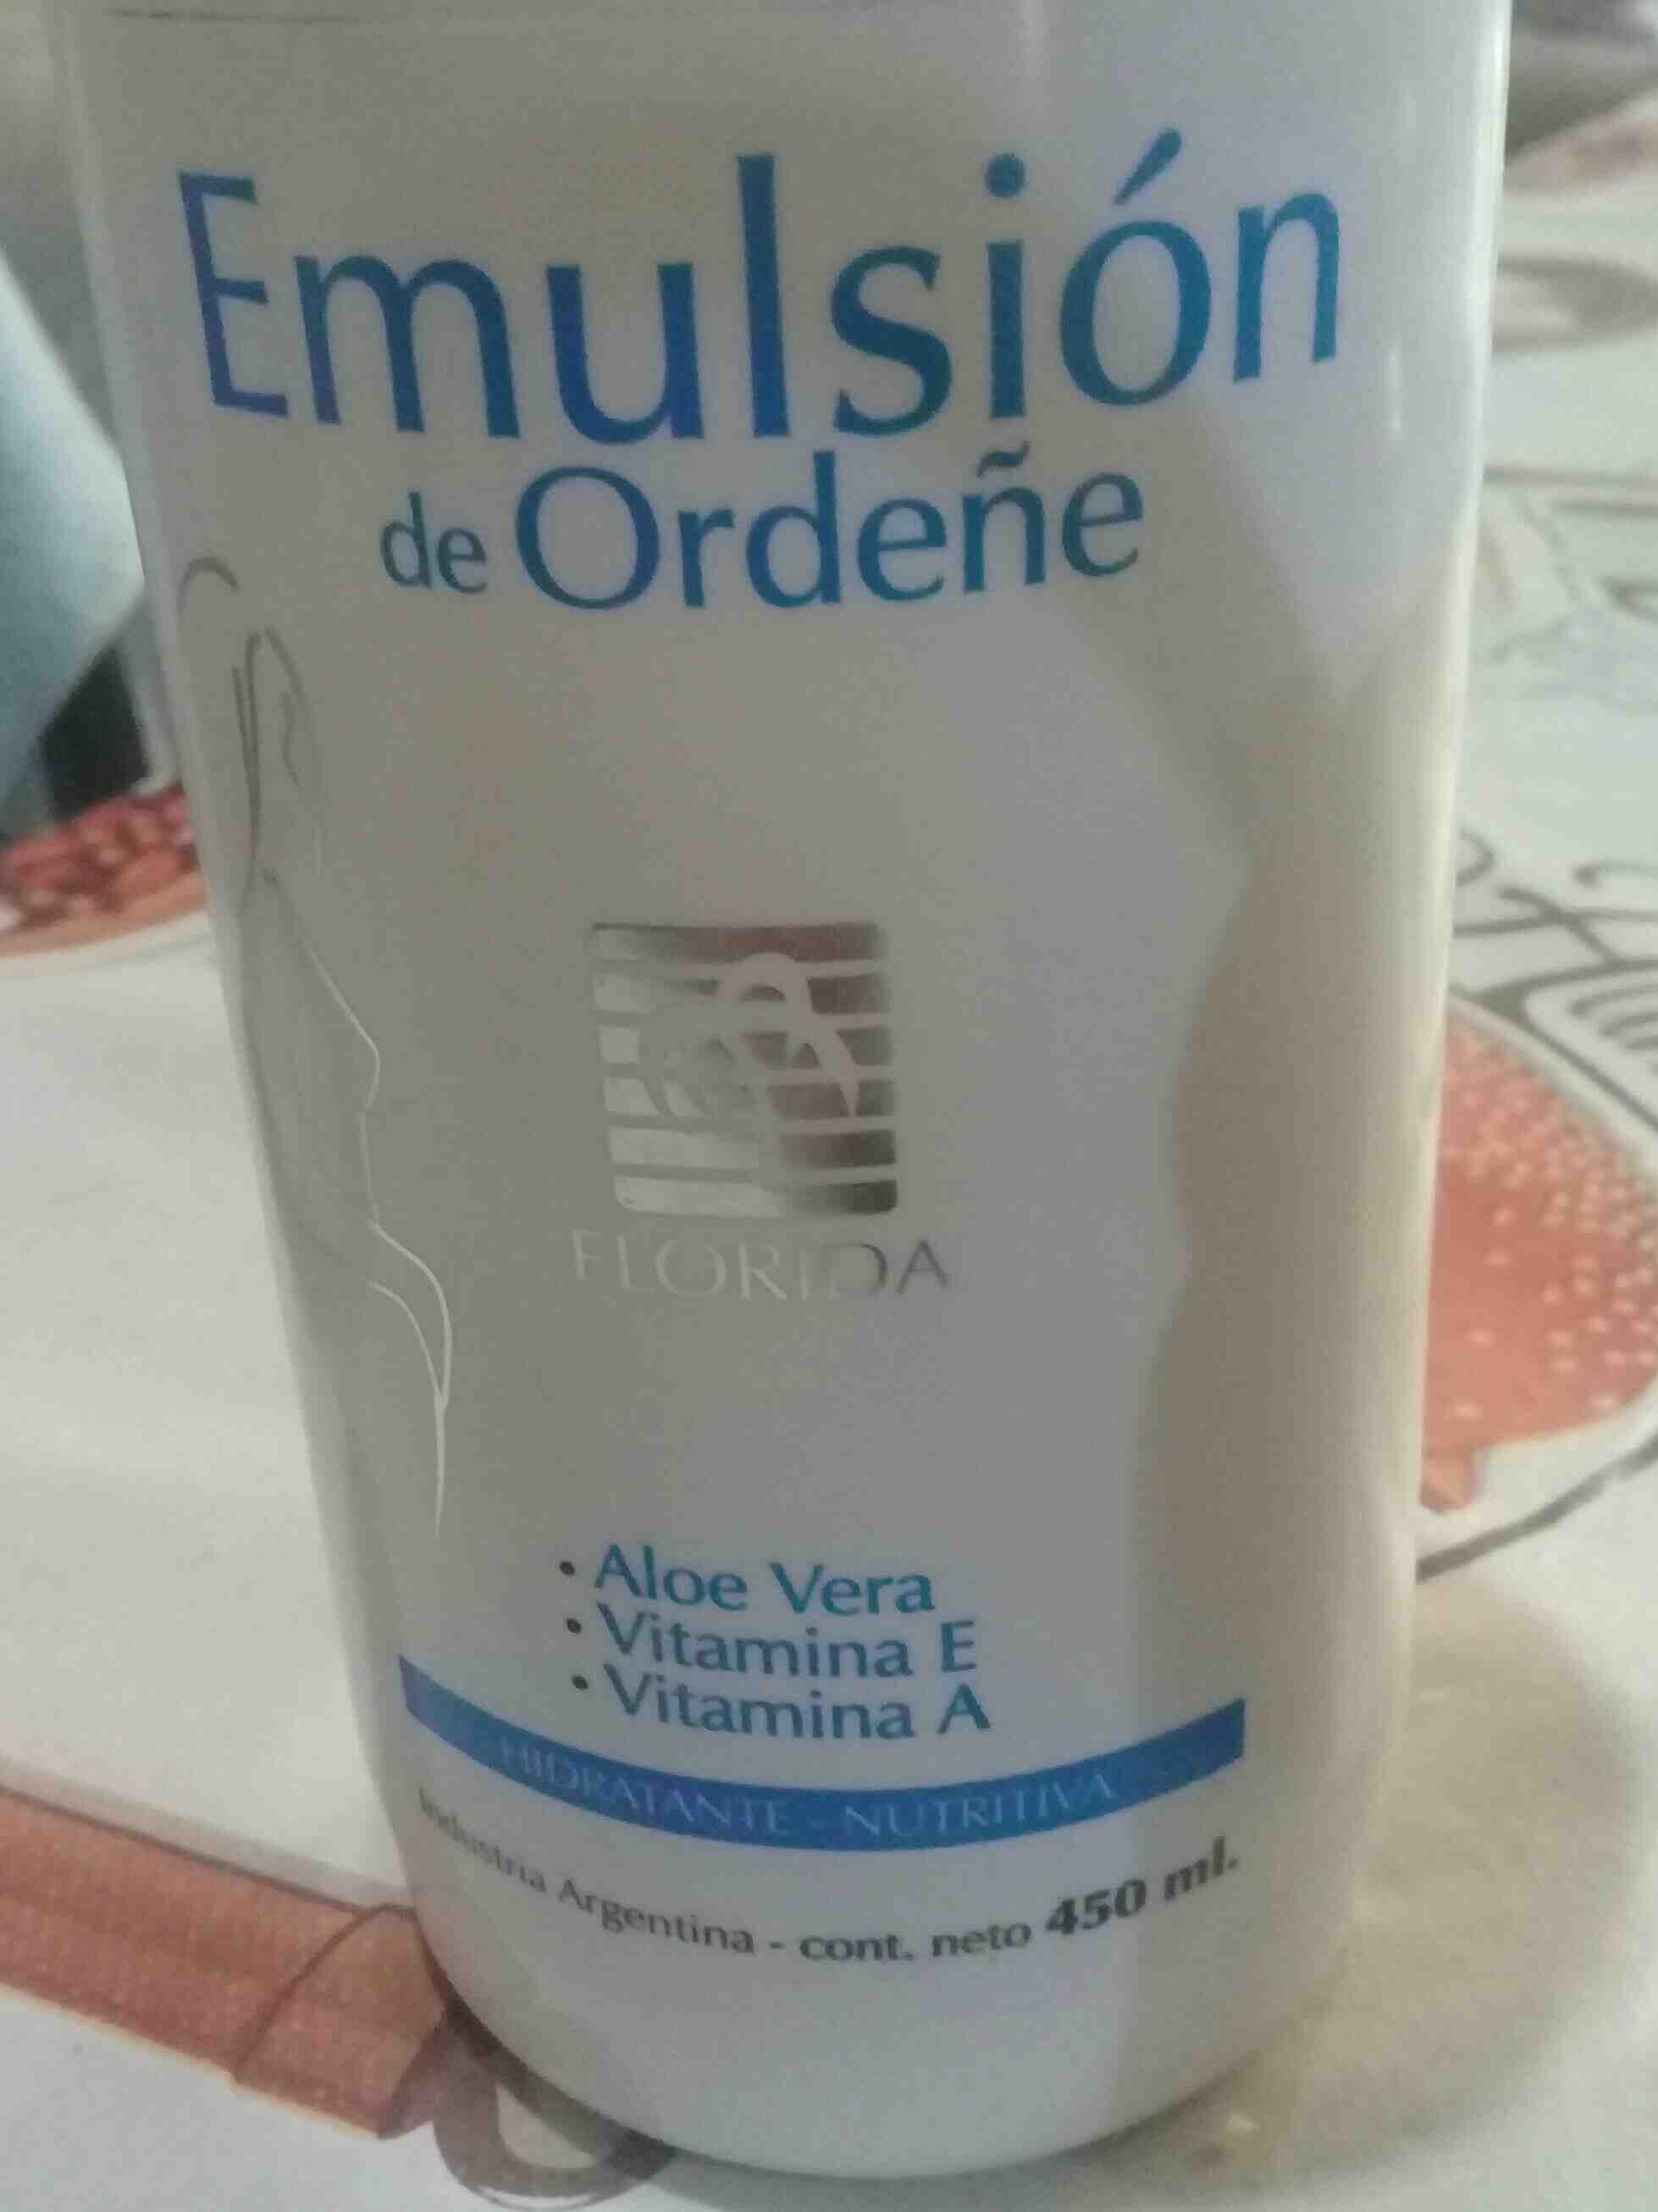 Emulsion de Ordeñe - Producte - en